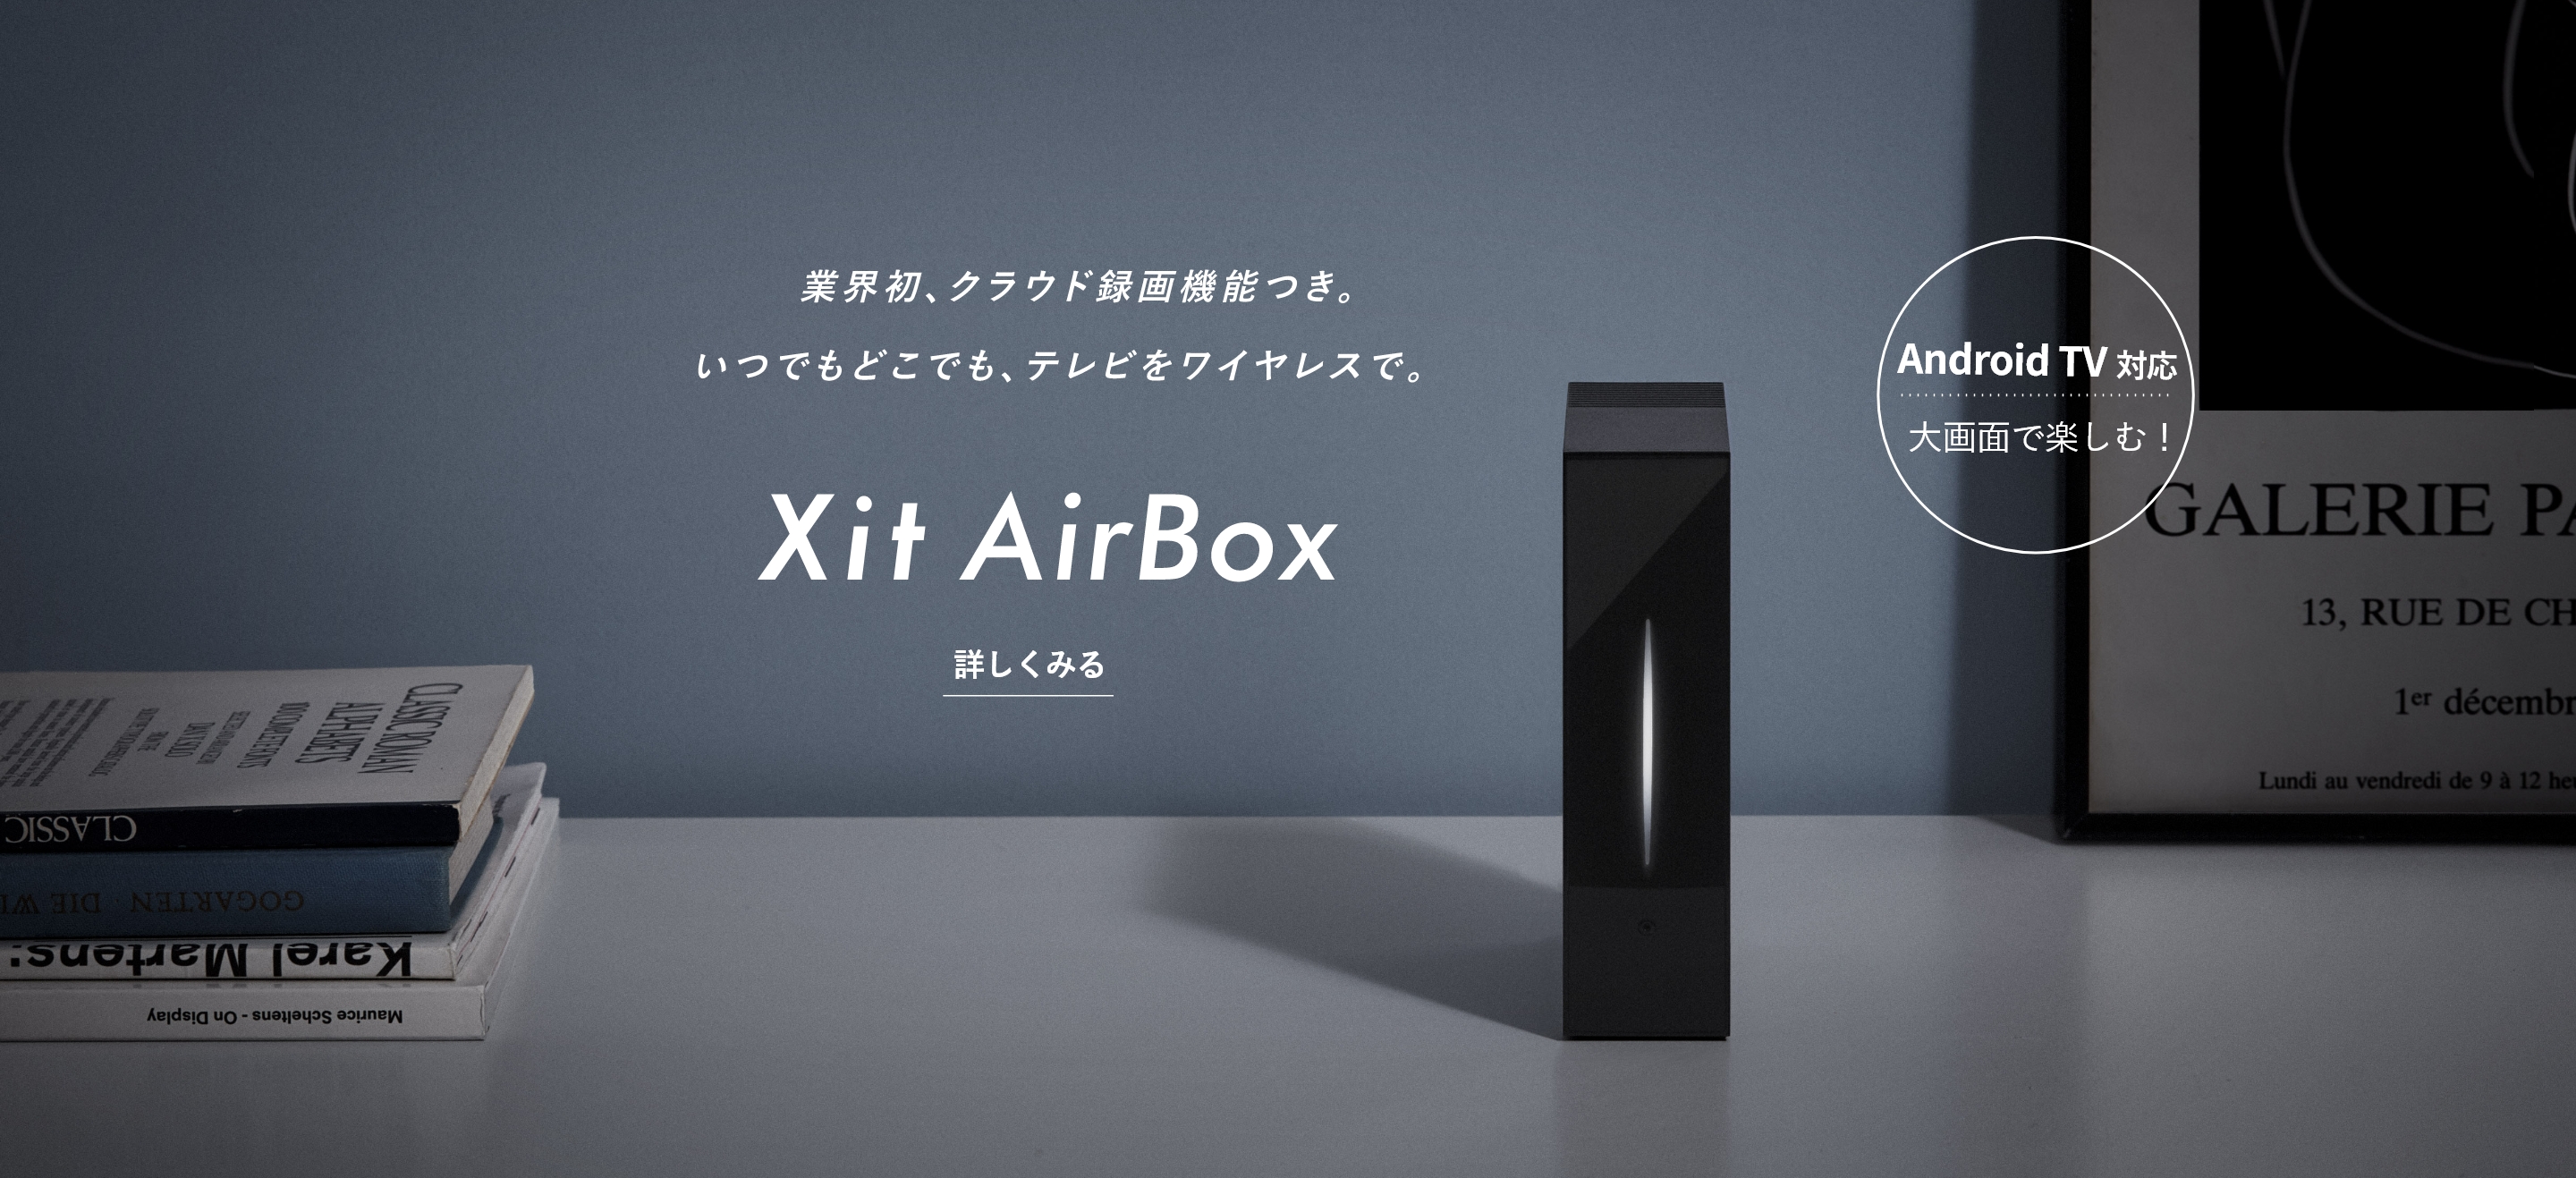 業界初、クラウド録画機能つき。いつでもどこでも、テレビをワイヤレスで。 Xit AirBox